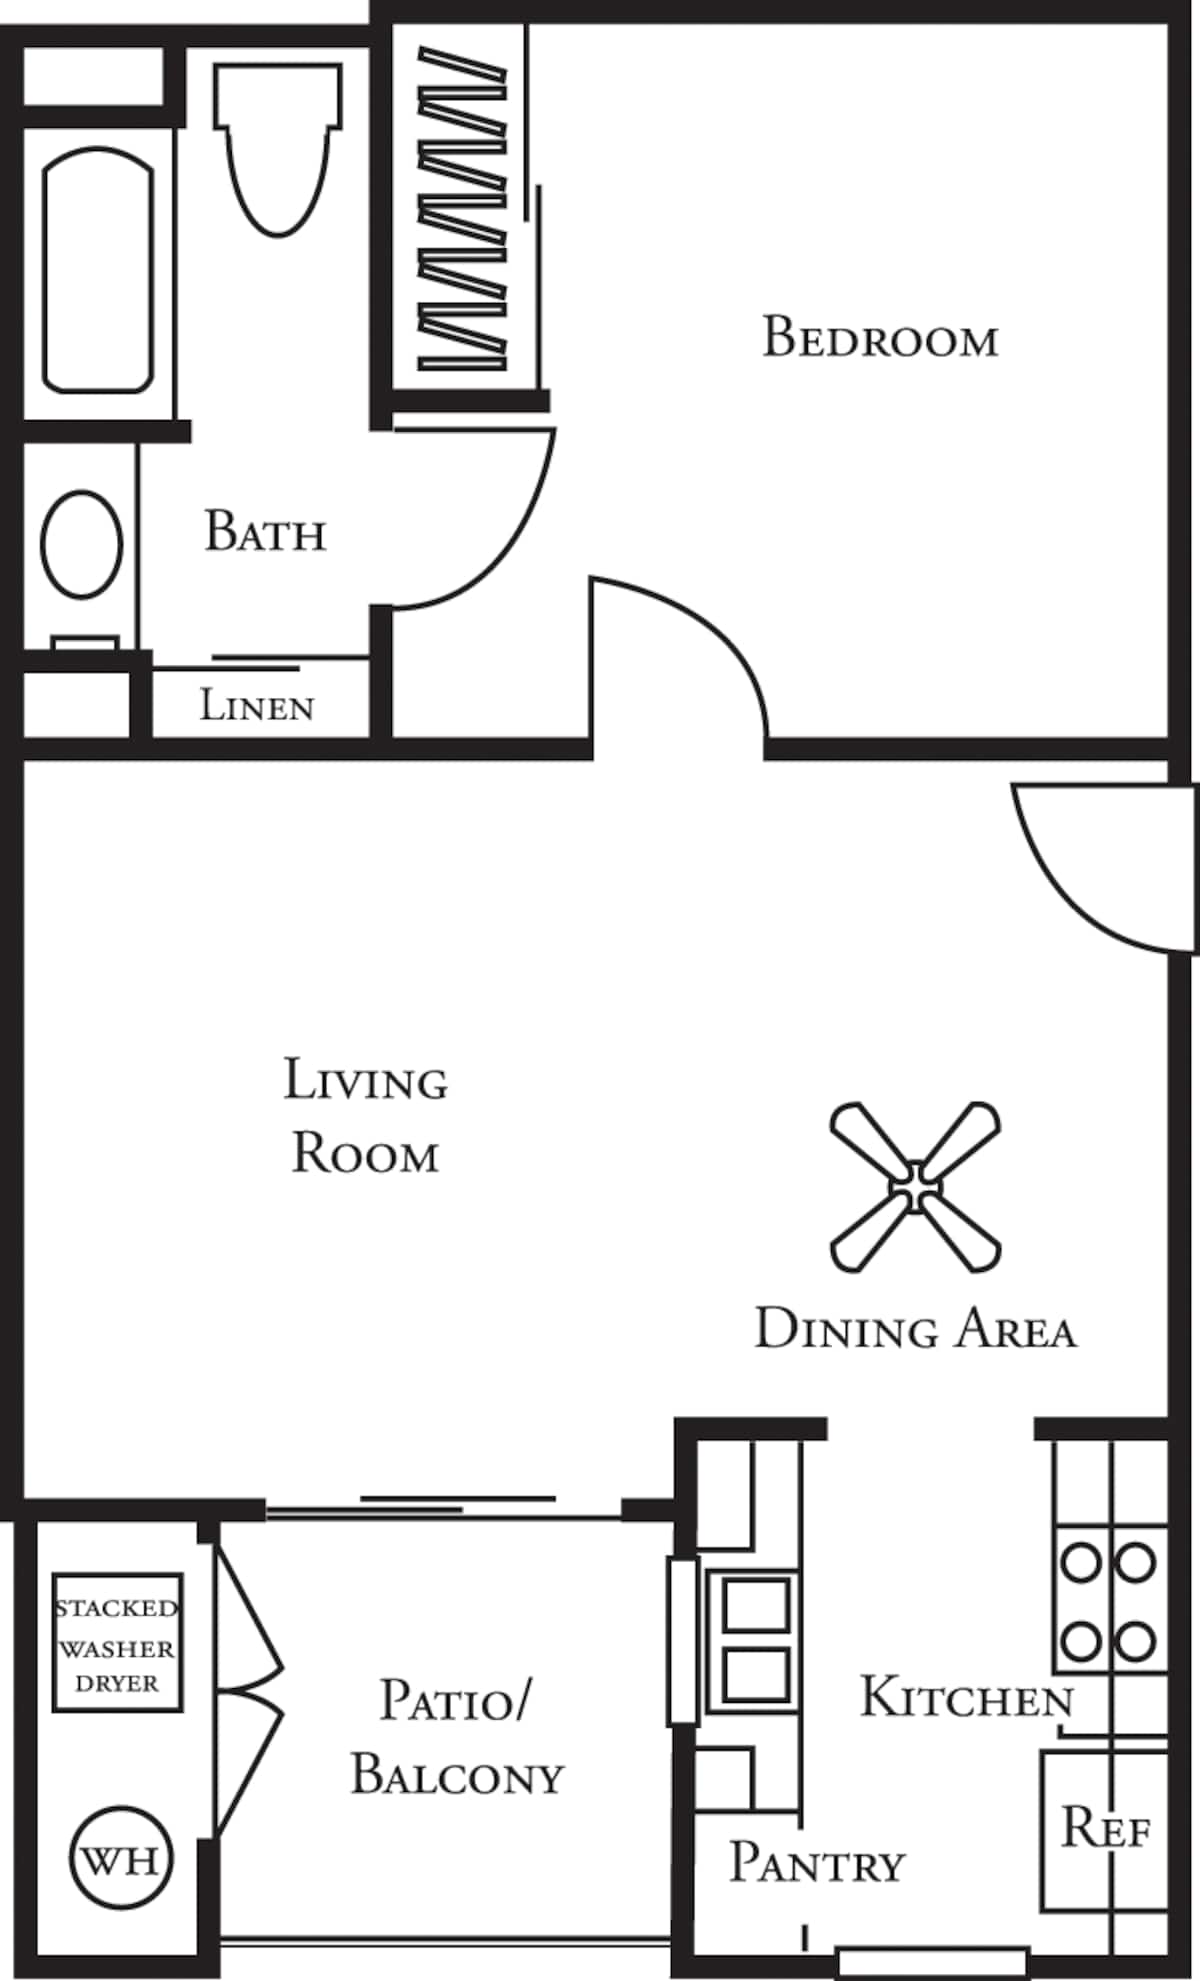 Floorplan diagram for Willow, showing 1 bedroom